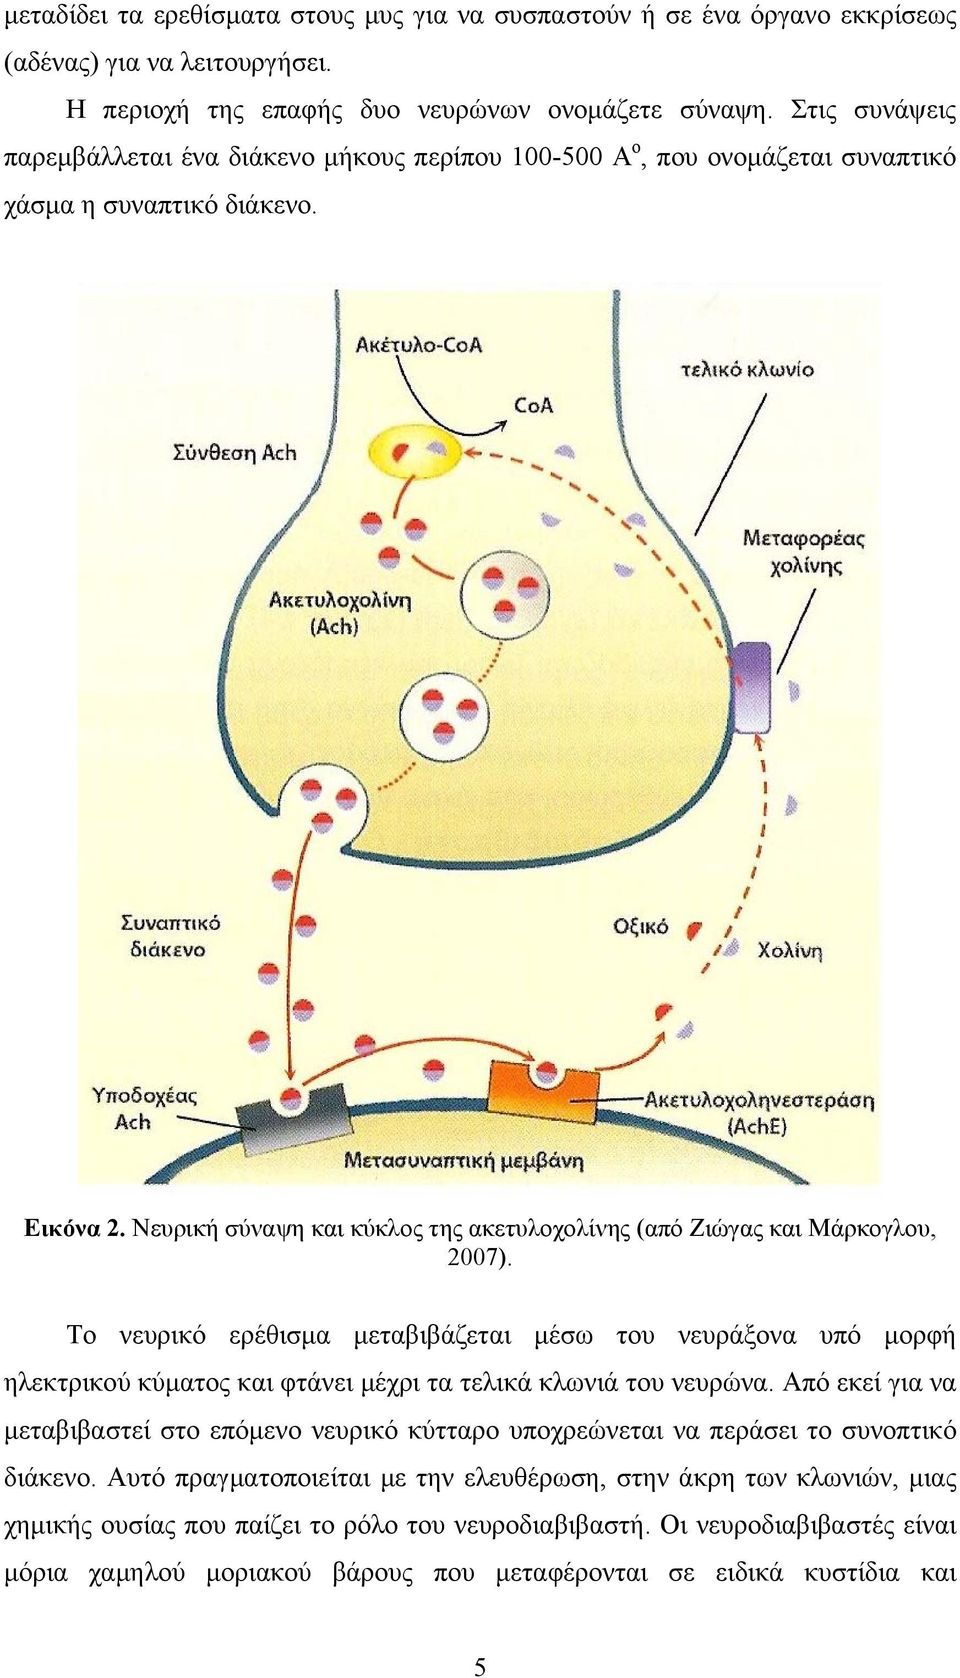 Νευρική σύναψη και κύκλος της ακετυλοχολίνης (από Ζιώγας και Μάρκογλου, 2007).